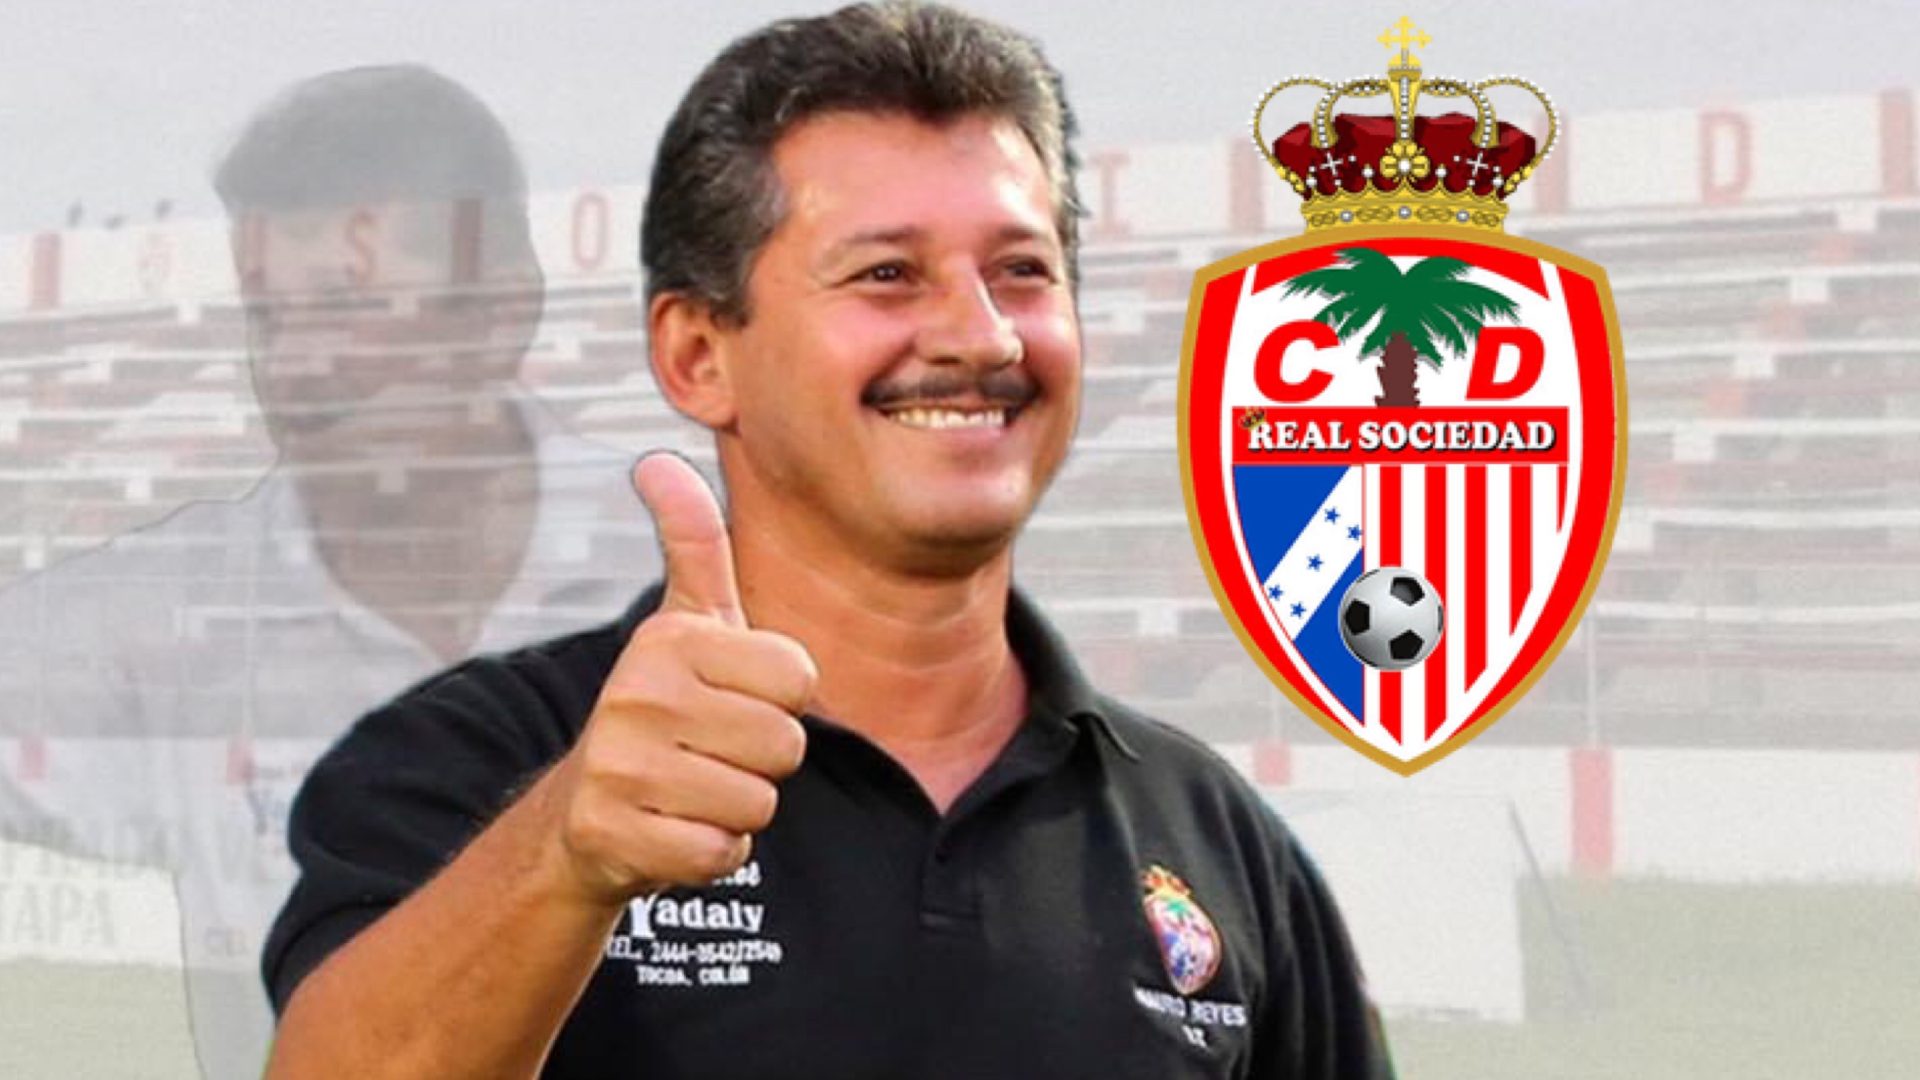 Mauro Reyes confirma la razón de su renuncia a la Real Sociedad